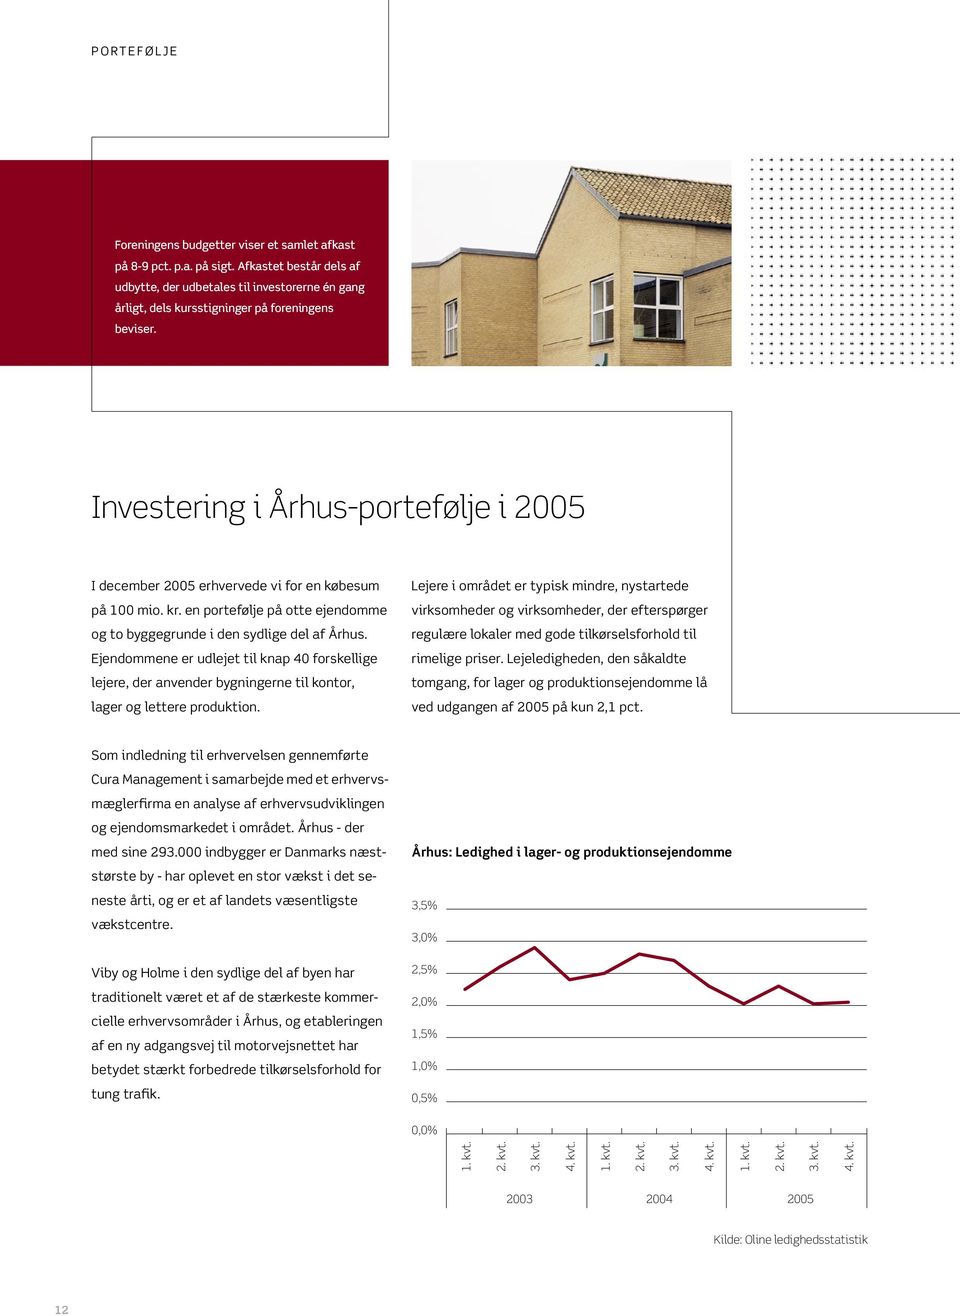 Investering i Århus-portefølje i 2005 I december 2005 erhvervede vi for en købesum på 100 mio. kr. en portefølje på otte ejendomme og to byggegrunde i den sydlige del af Århus.